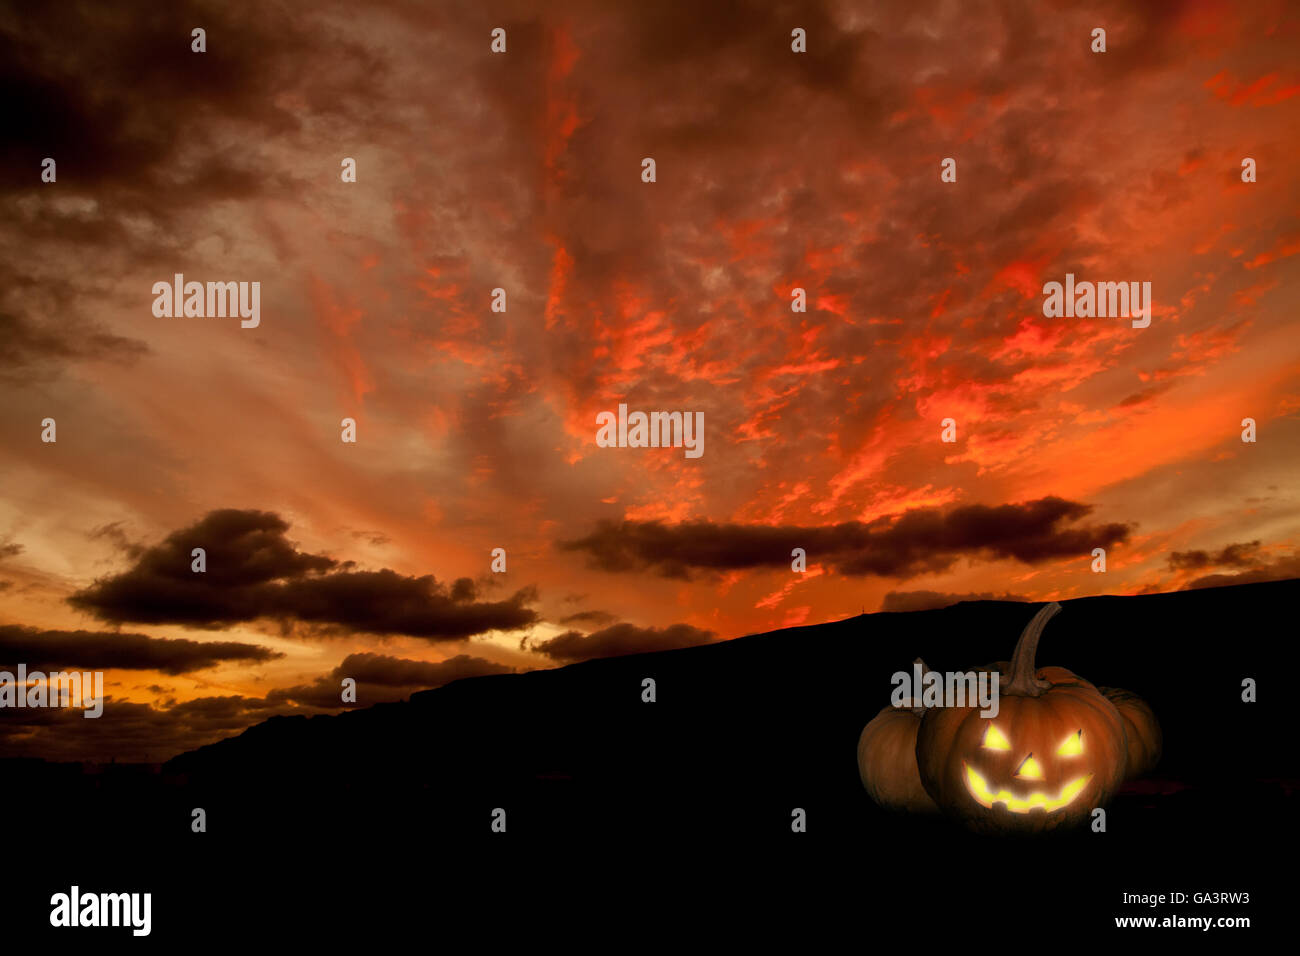 Spooky Halloween fond à la citrouille Banque D'Images